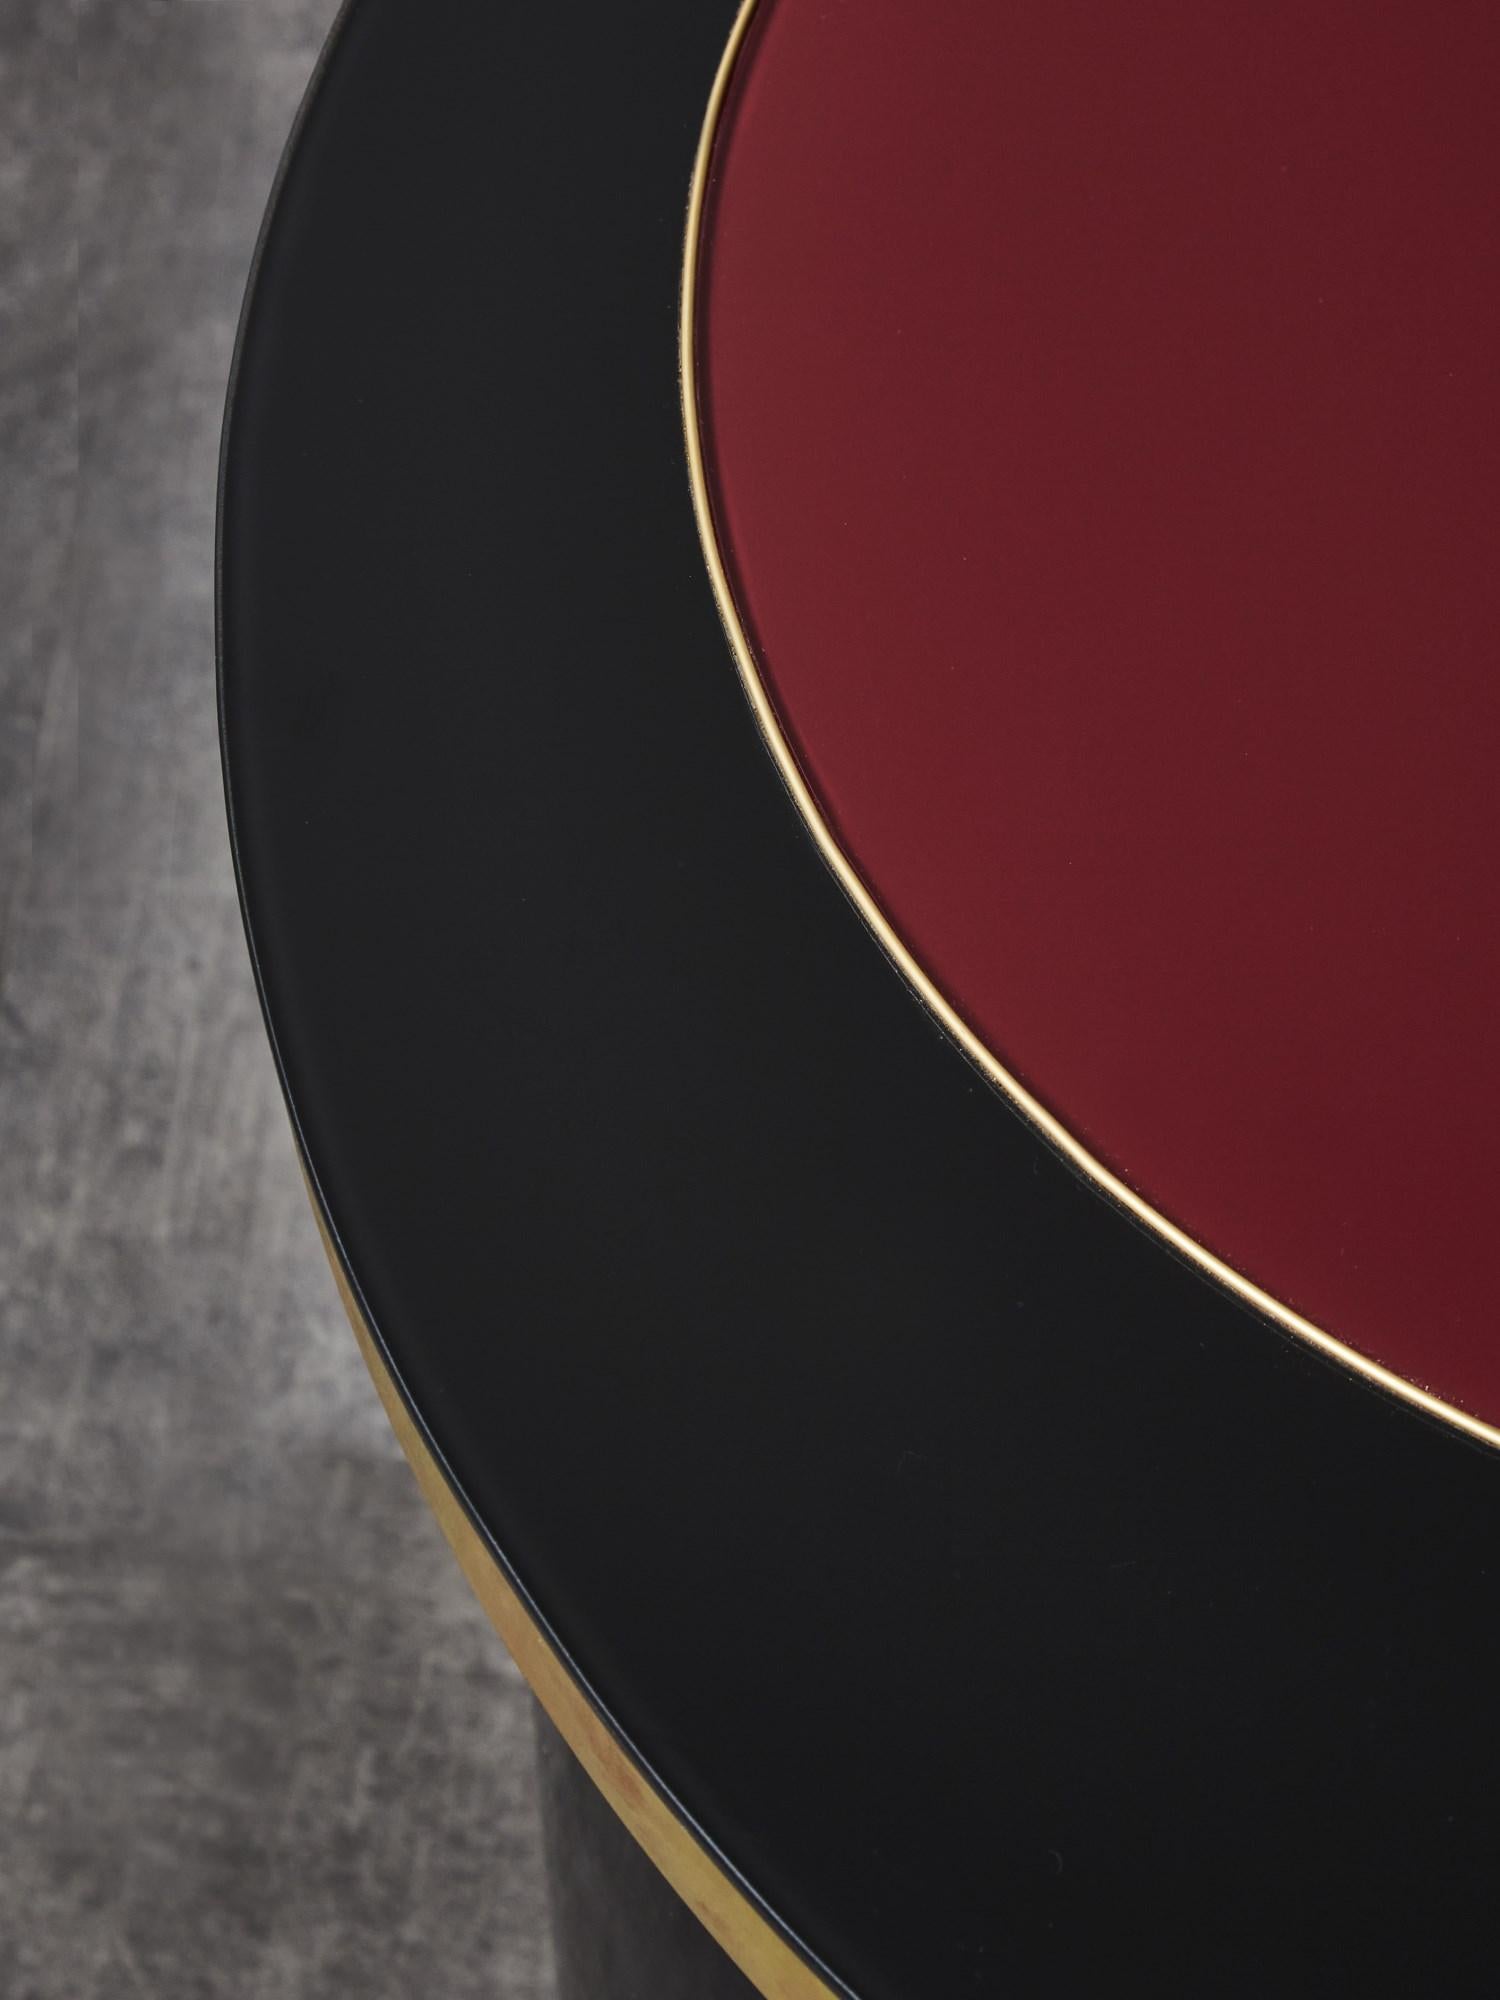 Piédestal en bois laqué noir, avec plateau en miroir teinté noir et rouge.